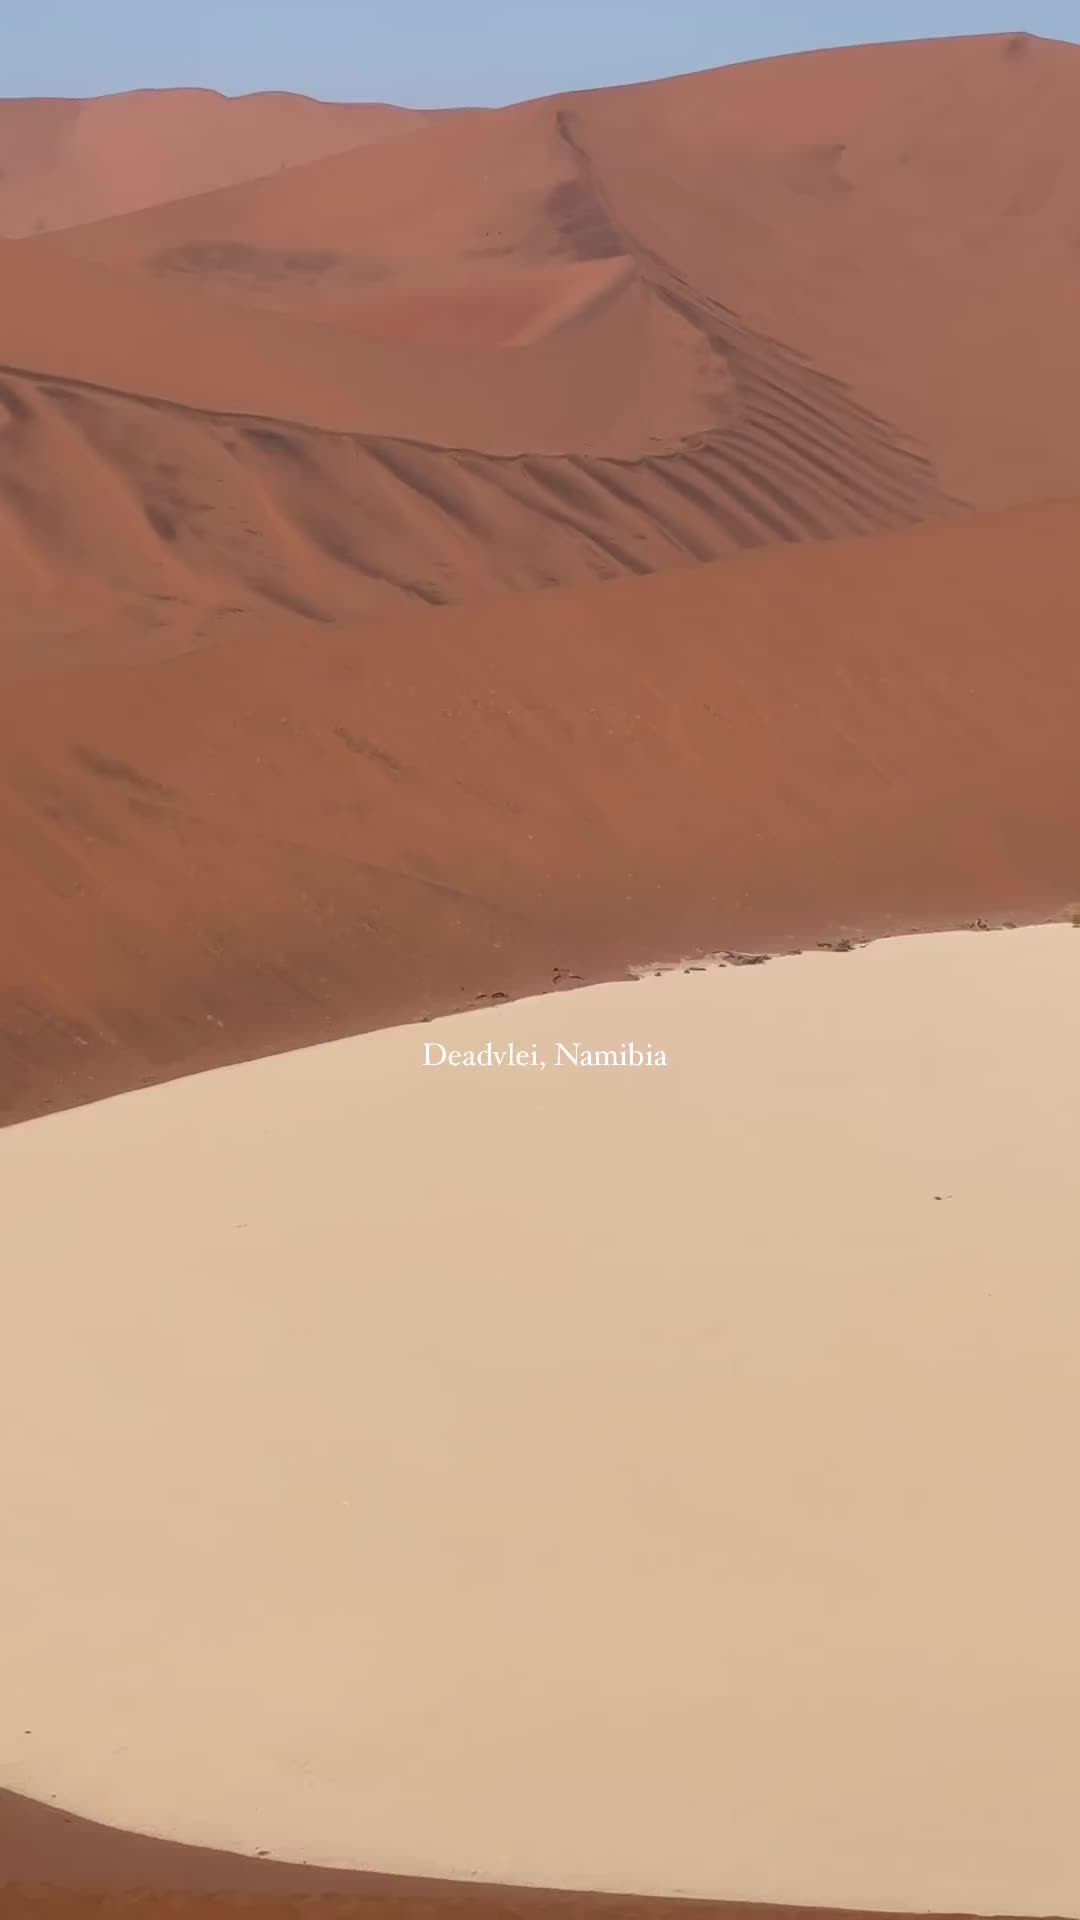 Explore Deadvlei: Namibia's Alien Landscape